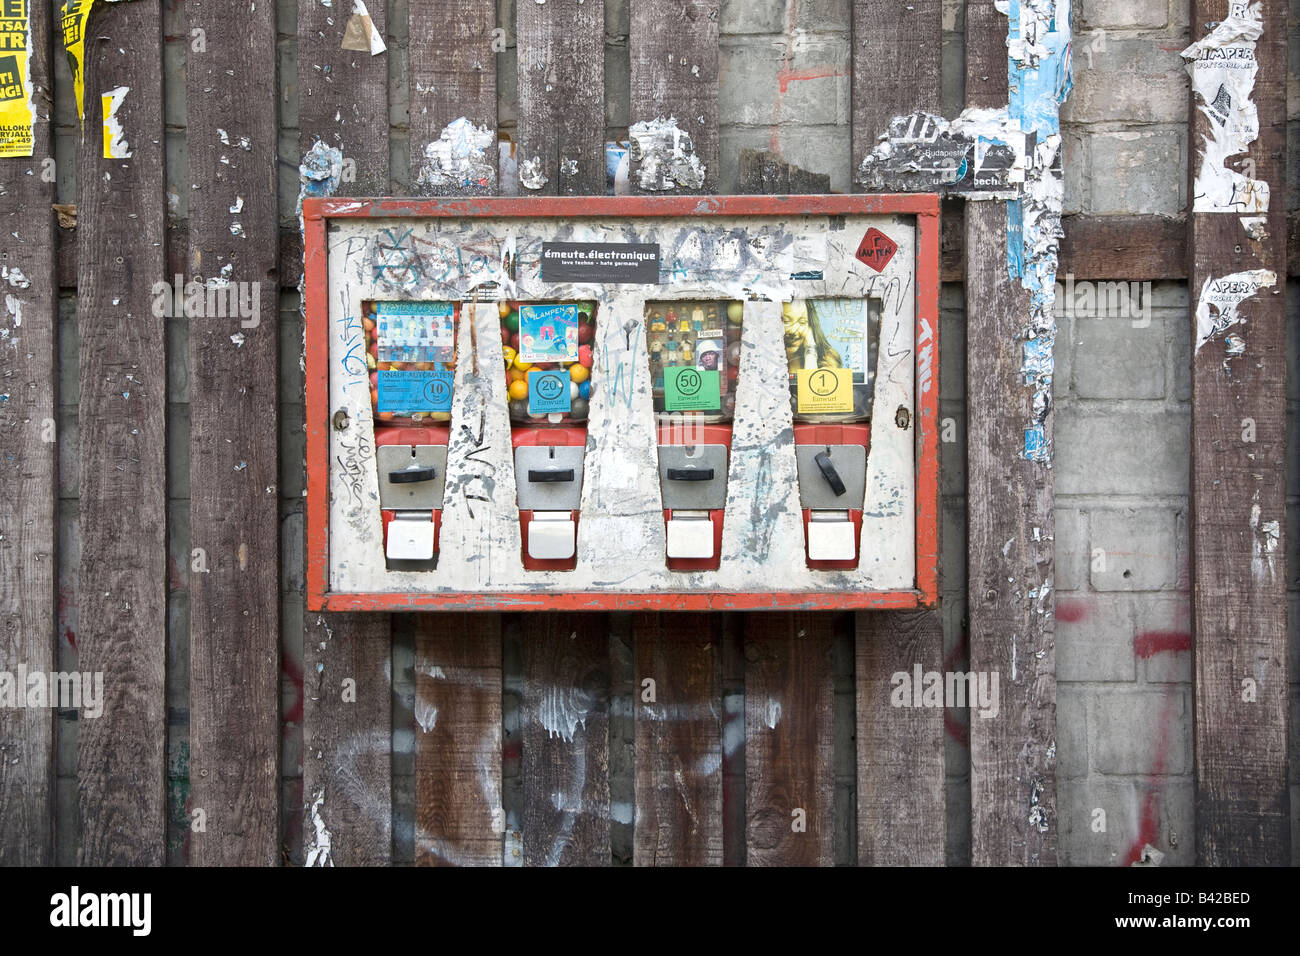 Una strada distributore soggetto ad atti vandalici a Berlino Germania Foto Stock